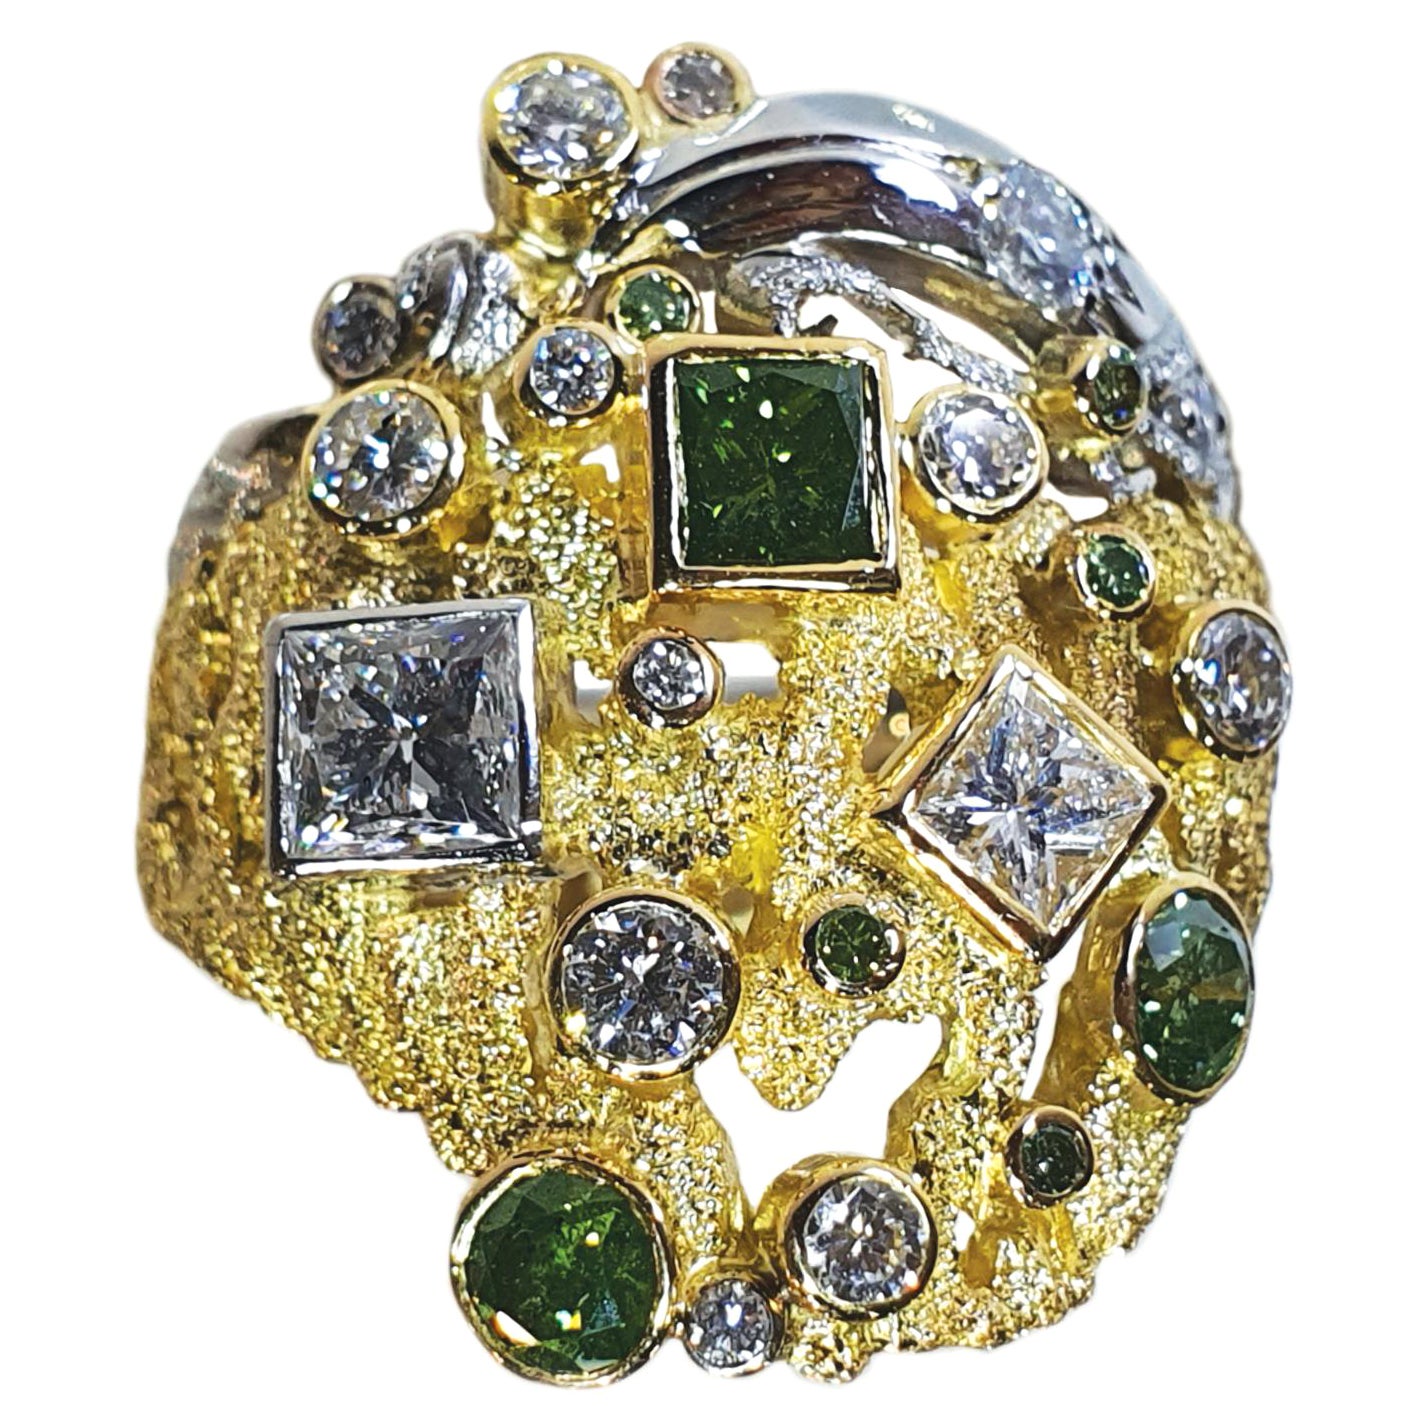 Ring "Bark" von Paul Amey aus 18 Karat Gold, Platin, grünen und weißen Diamanten, handgefertigt